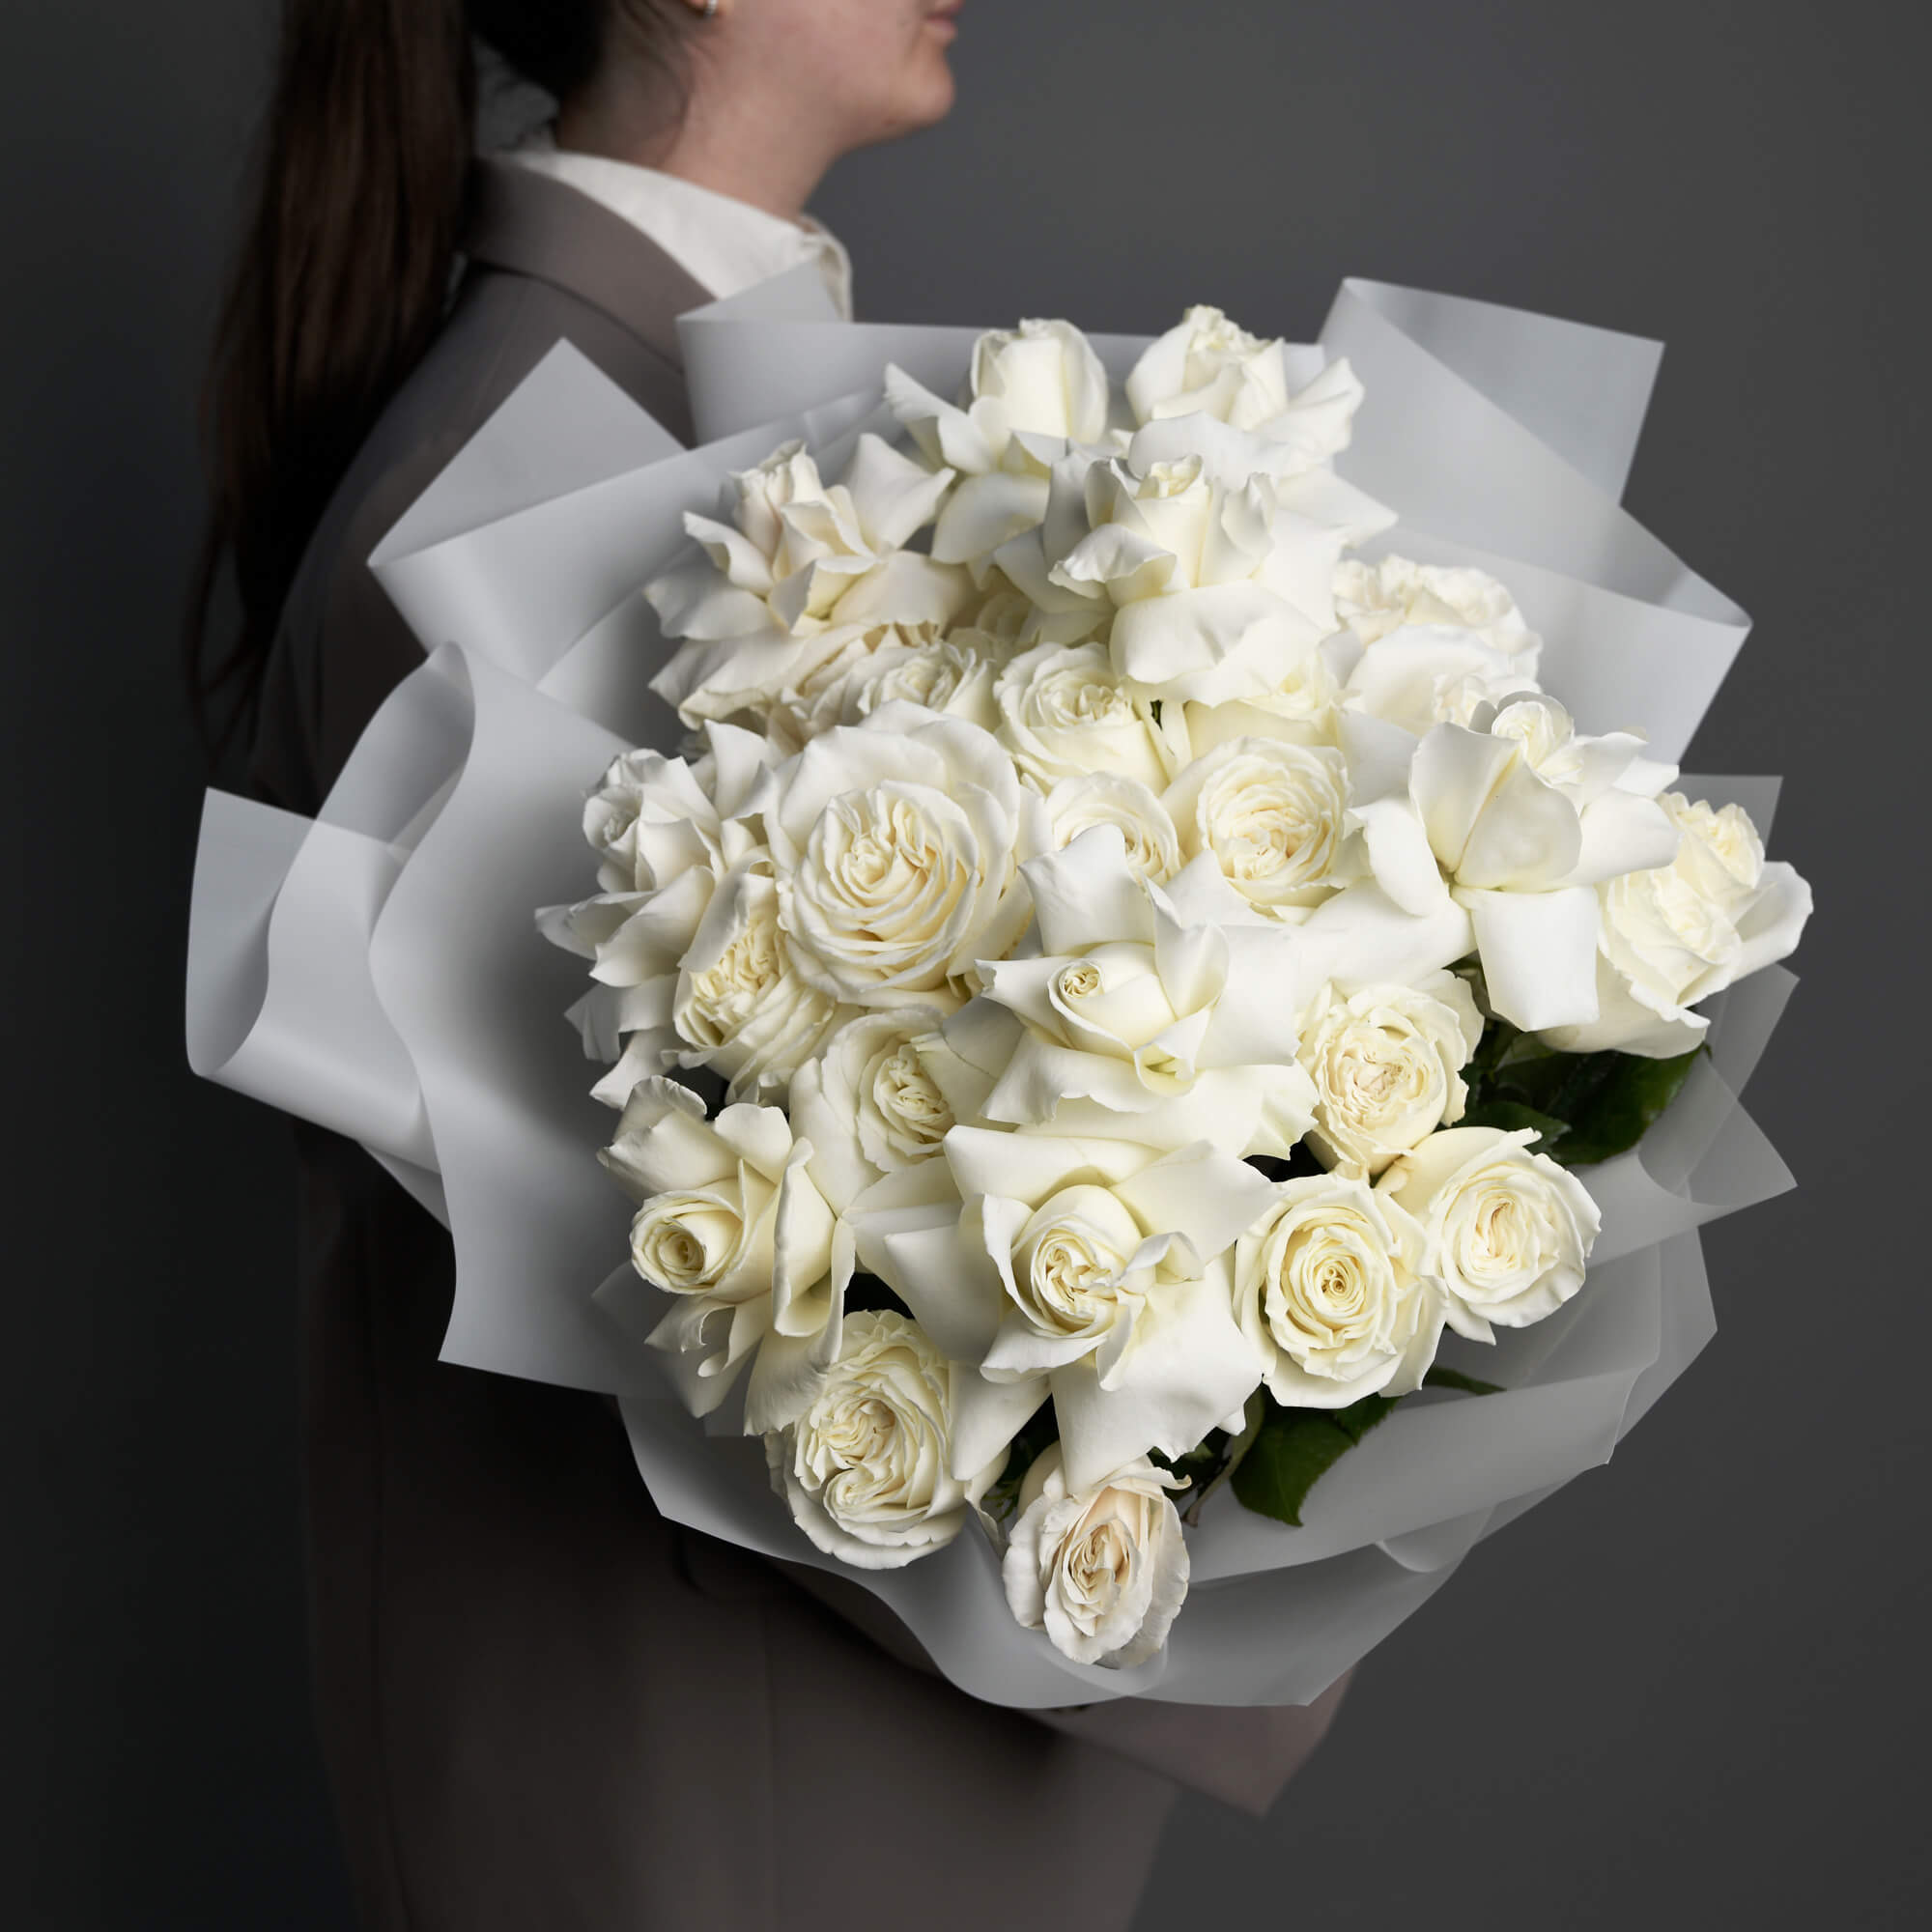 Buchet mixt cu 31 trandafiri albi, 2